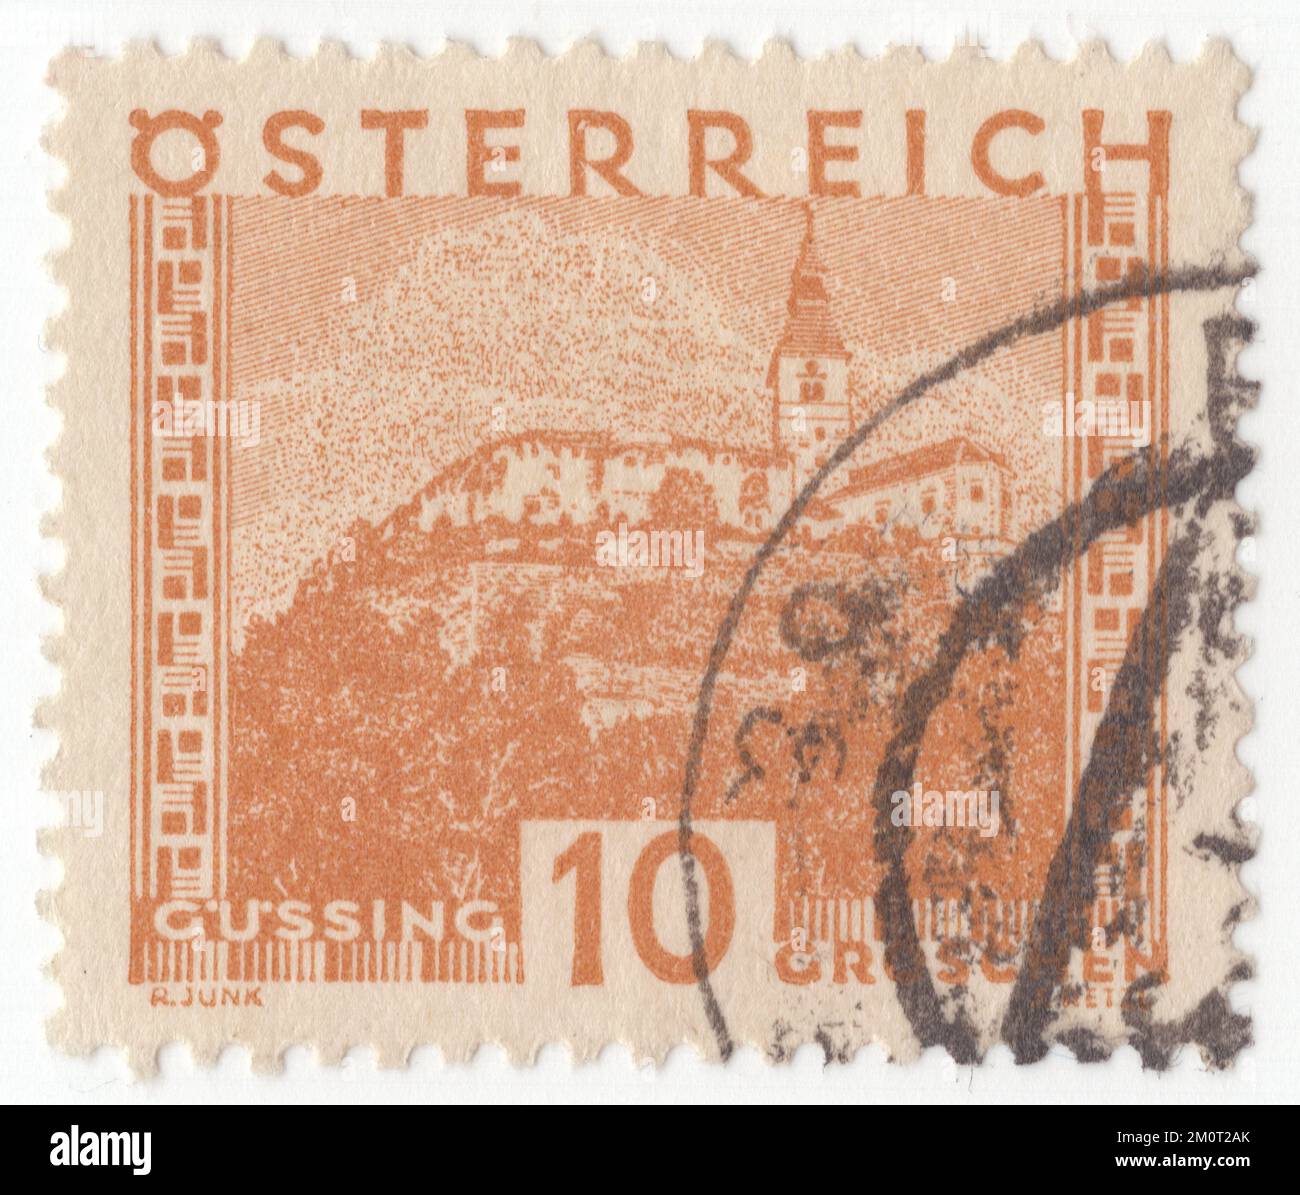 AUSTRIA - 1929: Original canceled Austrian 10 groschen postage stamp in brown orange. Austrian cities: Gussing Stock Photo